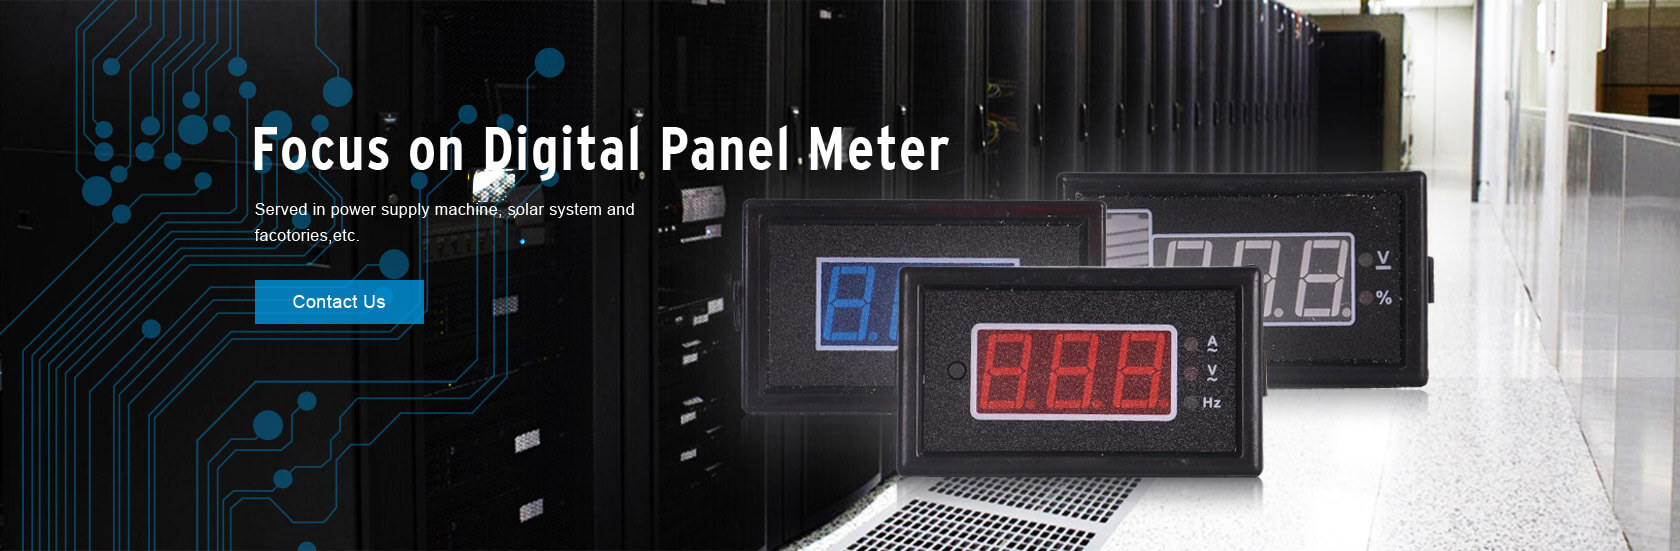 Digitial Panel Meter